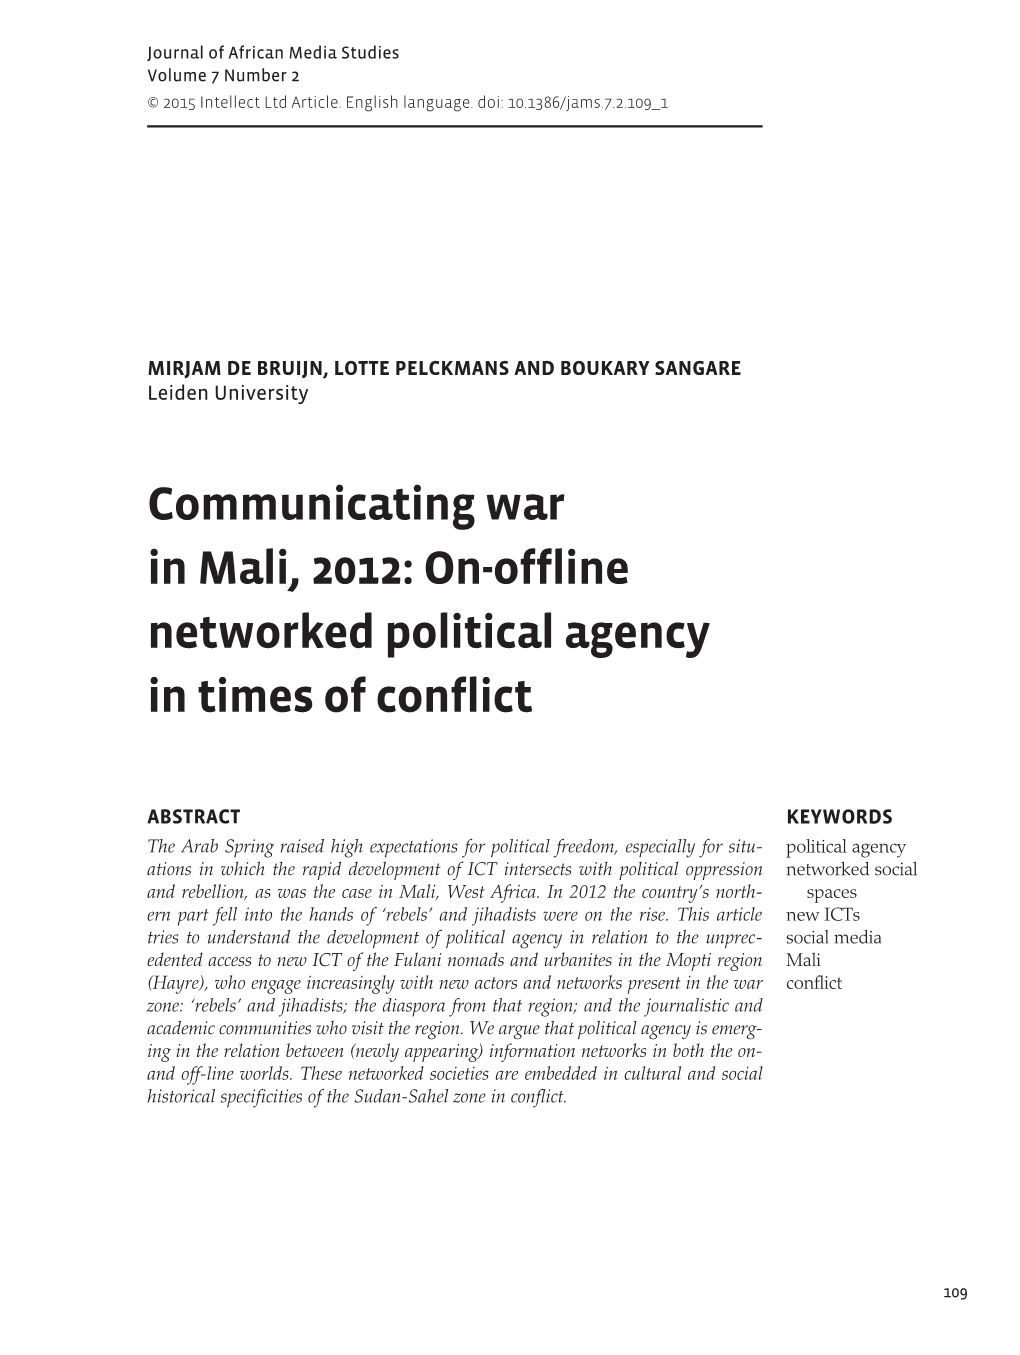 Communicating War Mali